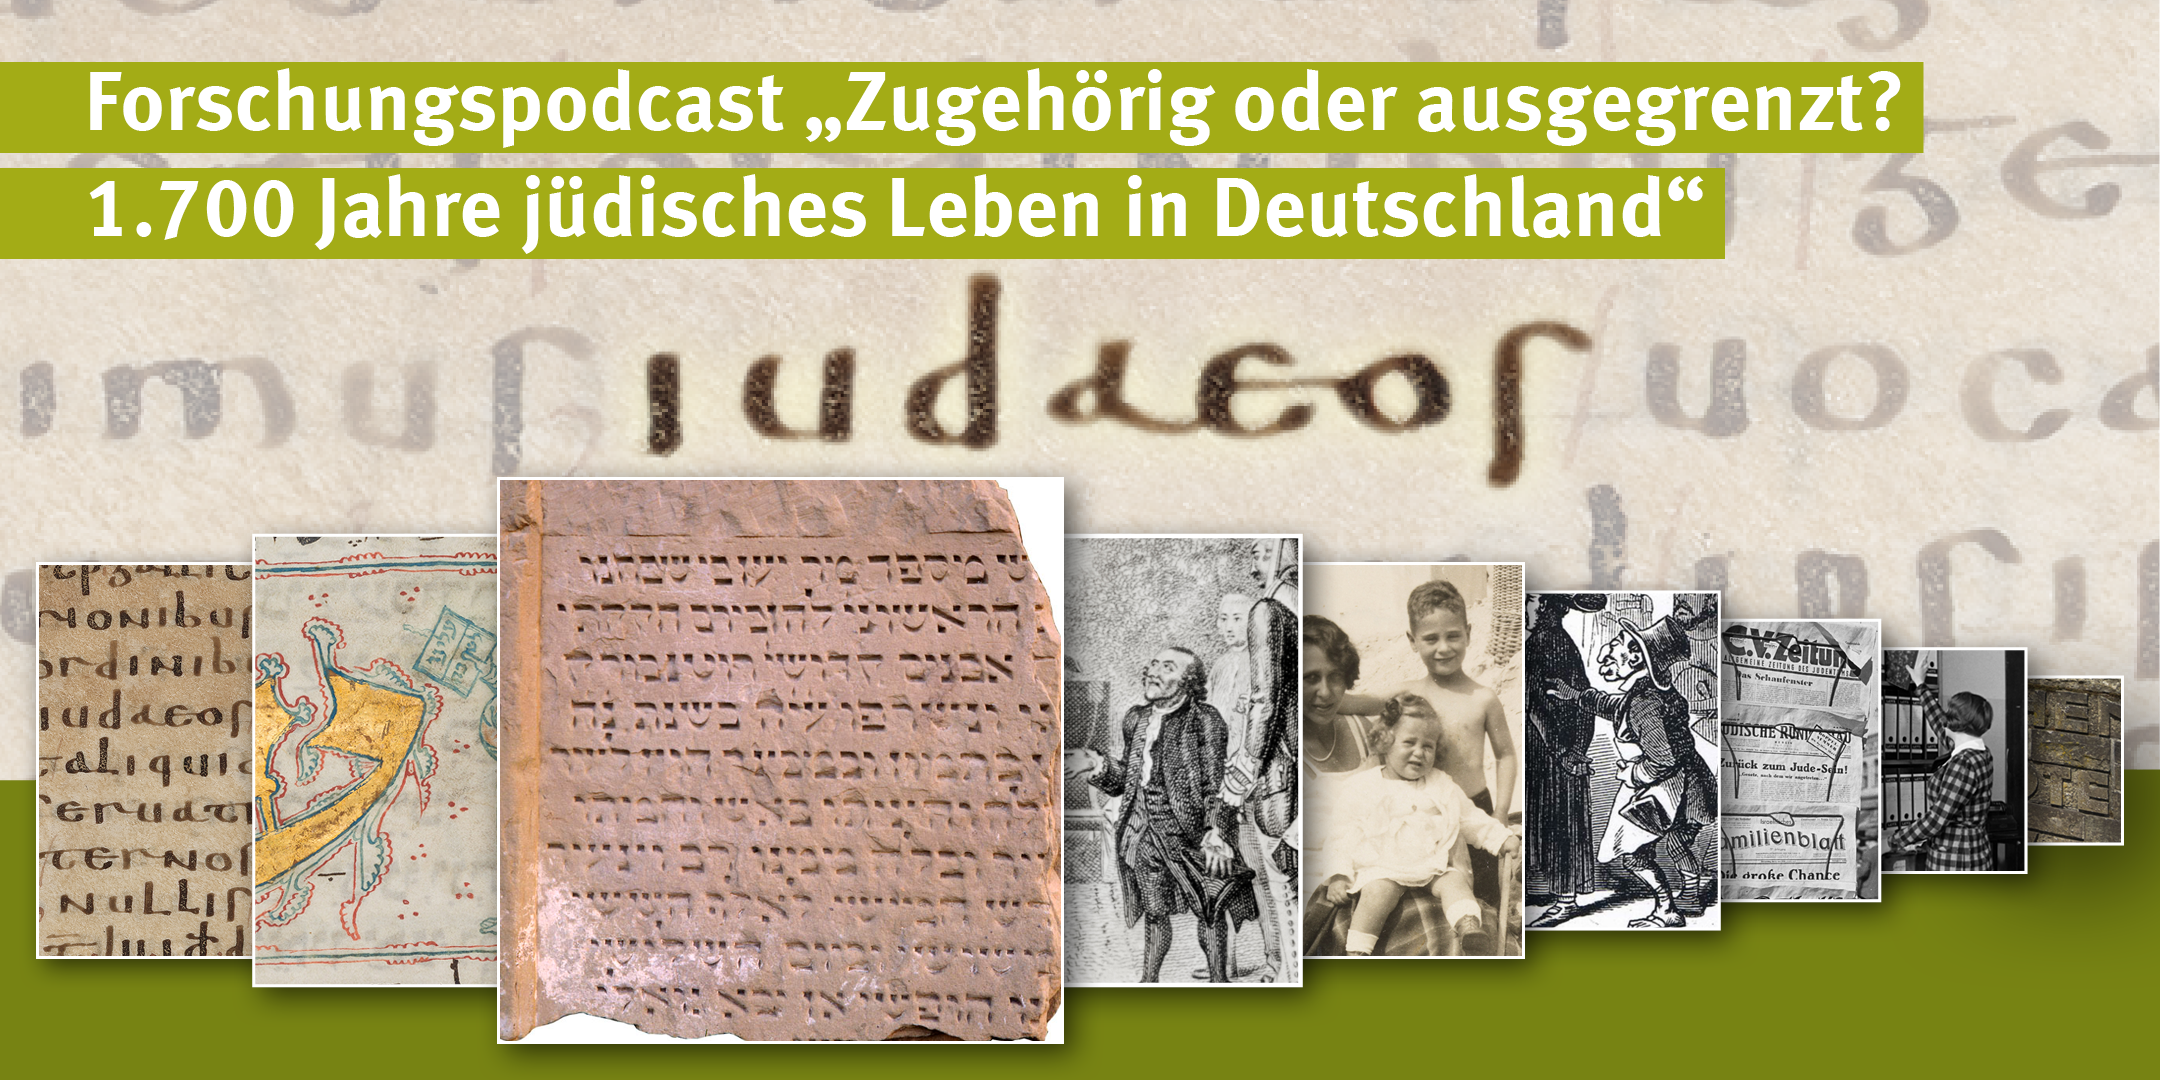 P-1-2-2102-22 Podcast Sharepic Serie Juedischesleben 1x2 3